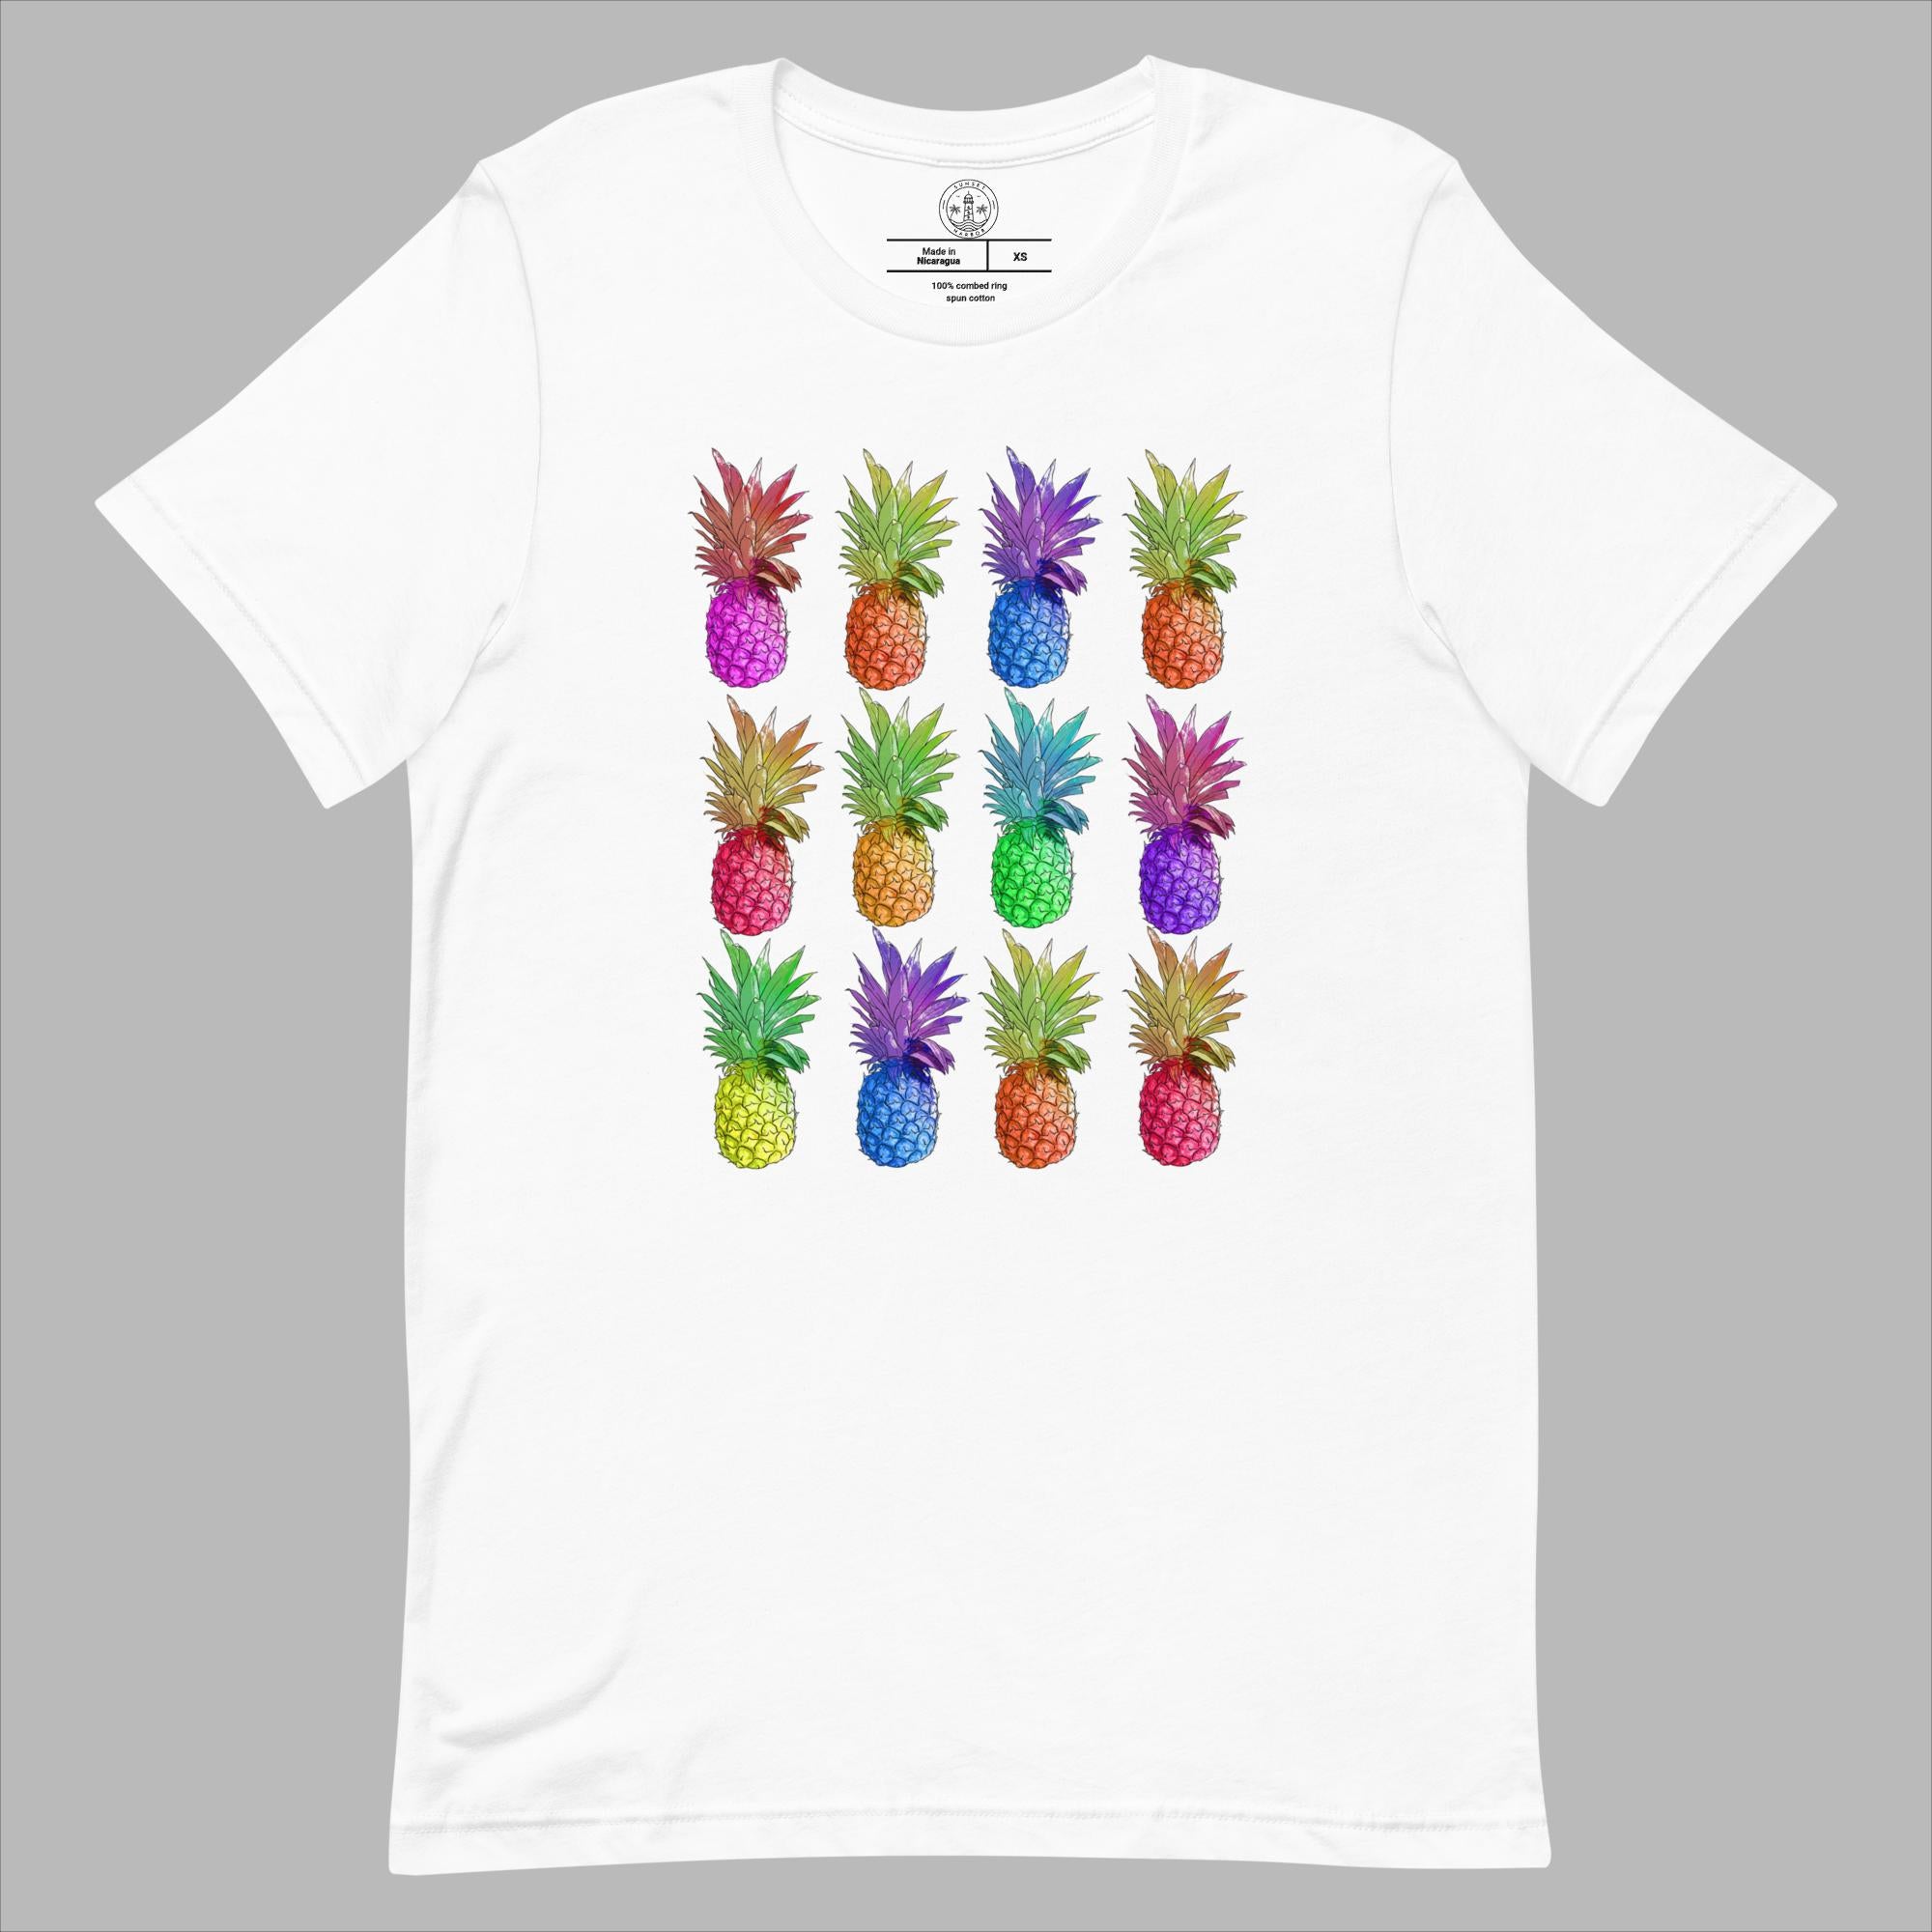 Camiseta unisex - Piñas